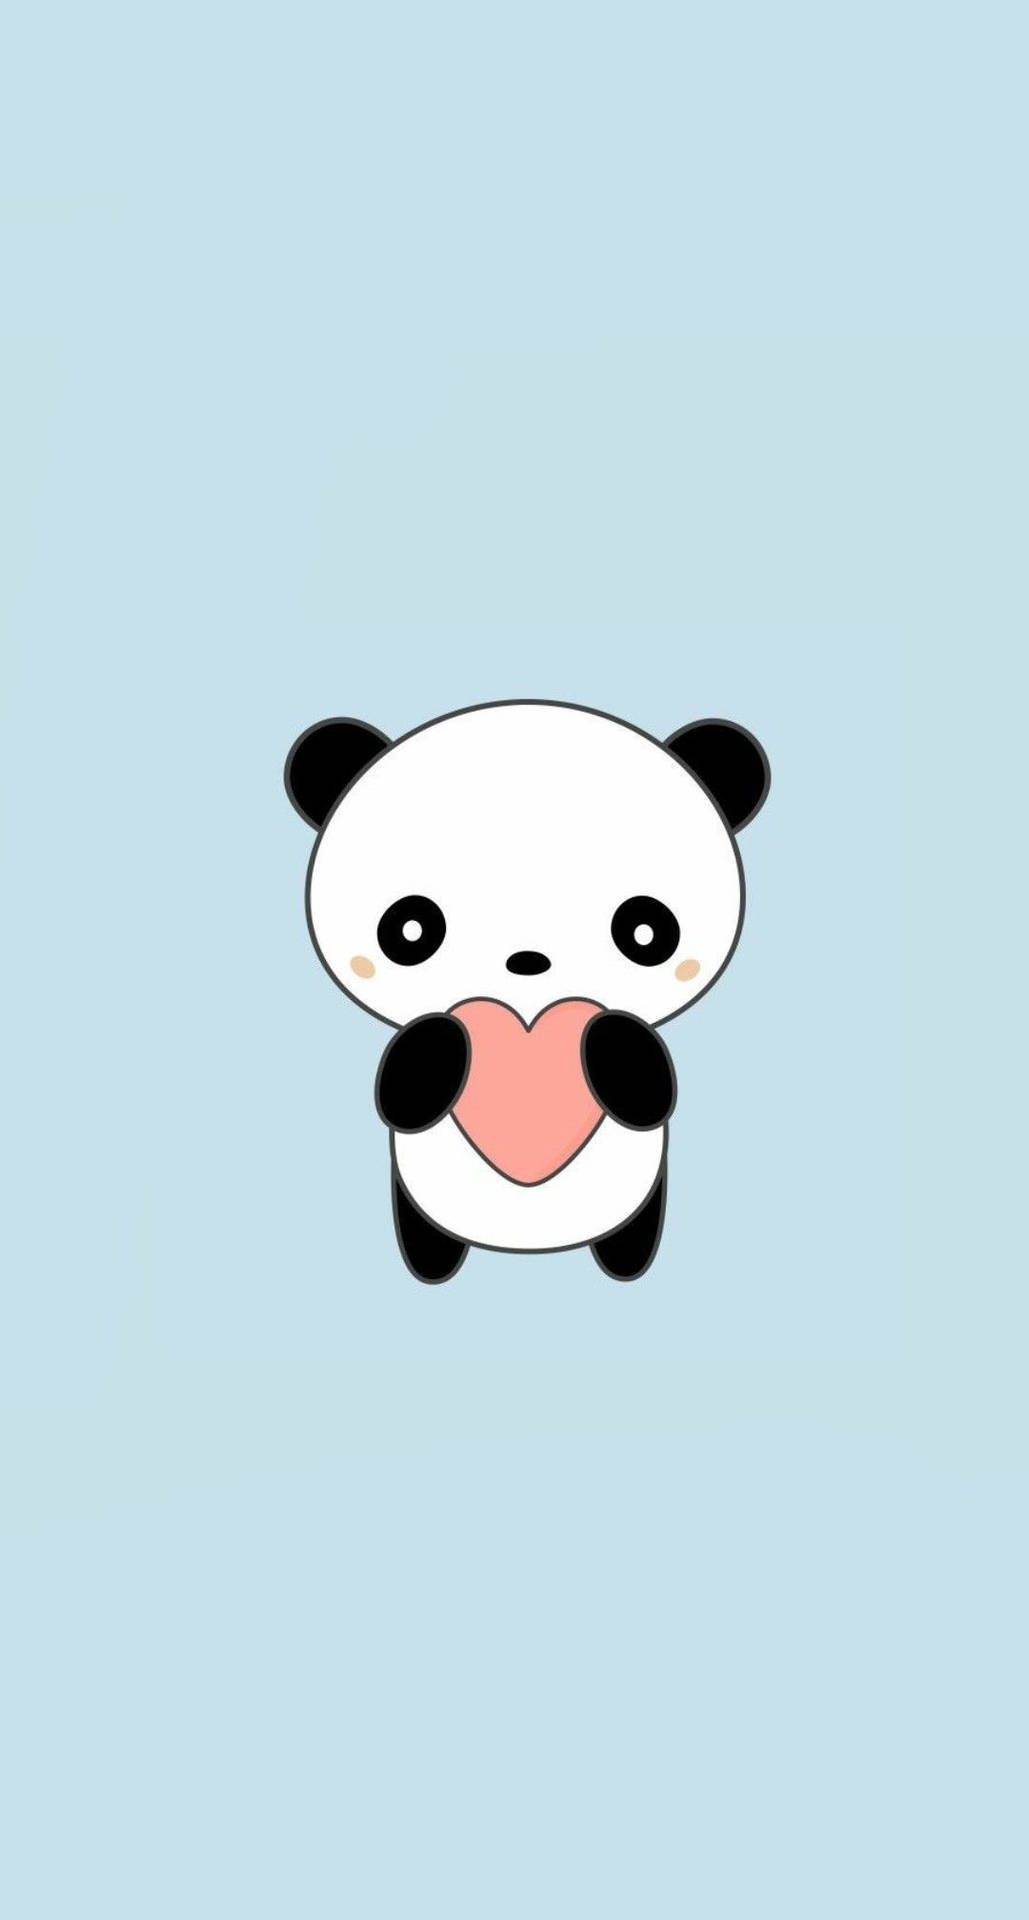 Aesthetic Panda Holding Heart Wallpaper